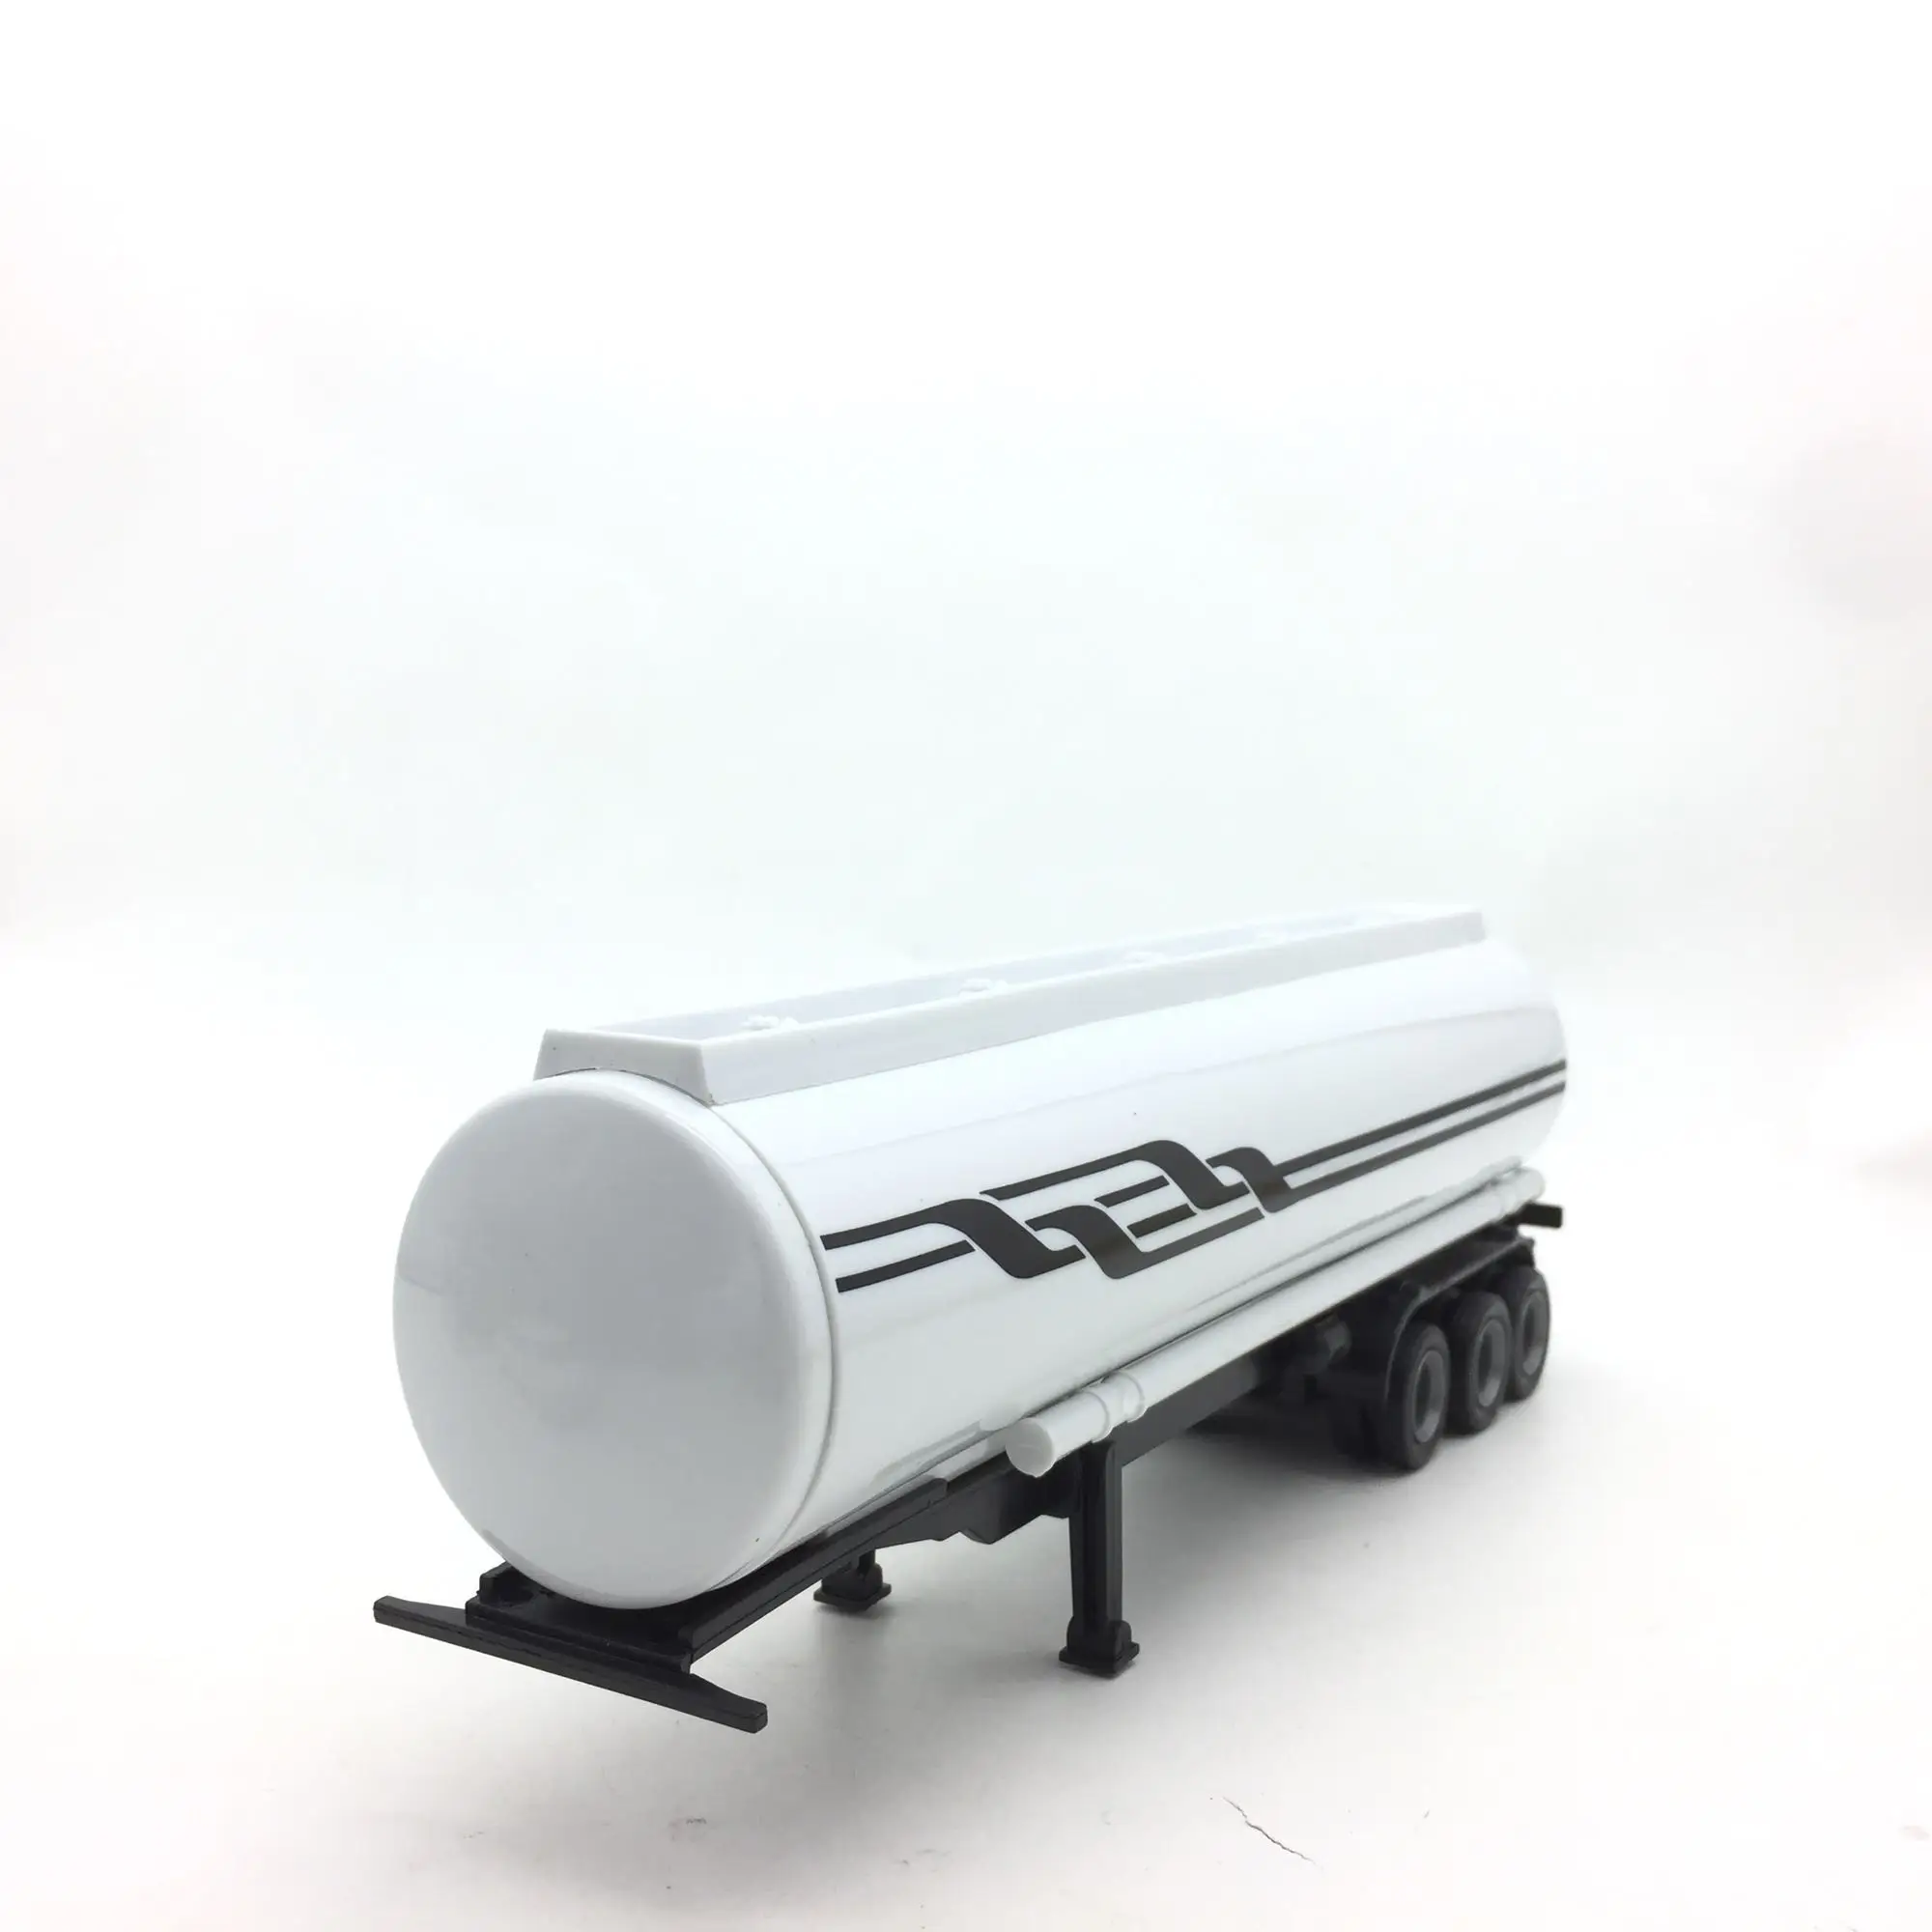 

28 см 1/43 масштаб модель грузовика Модификация аксессуары трейлер транспортное средство литье под давлением Буксировка пластиковая игрушка ...